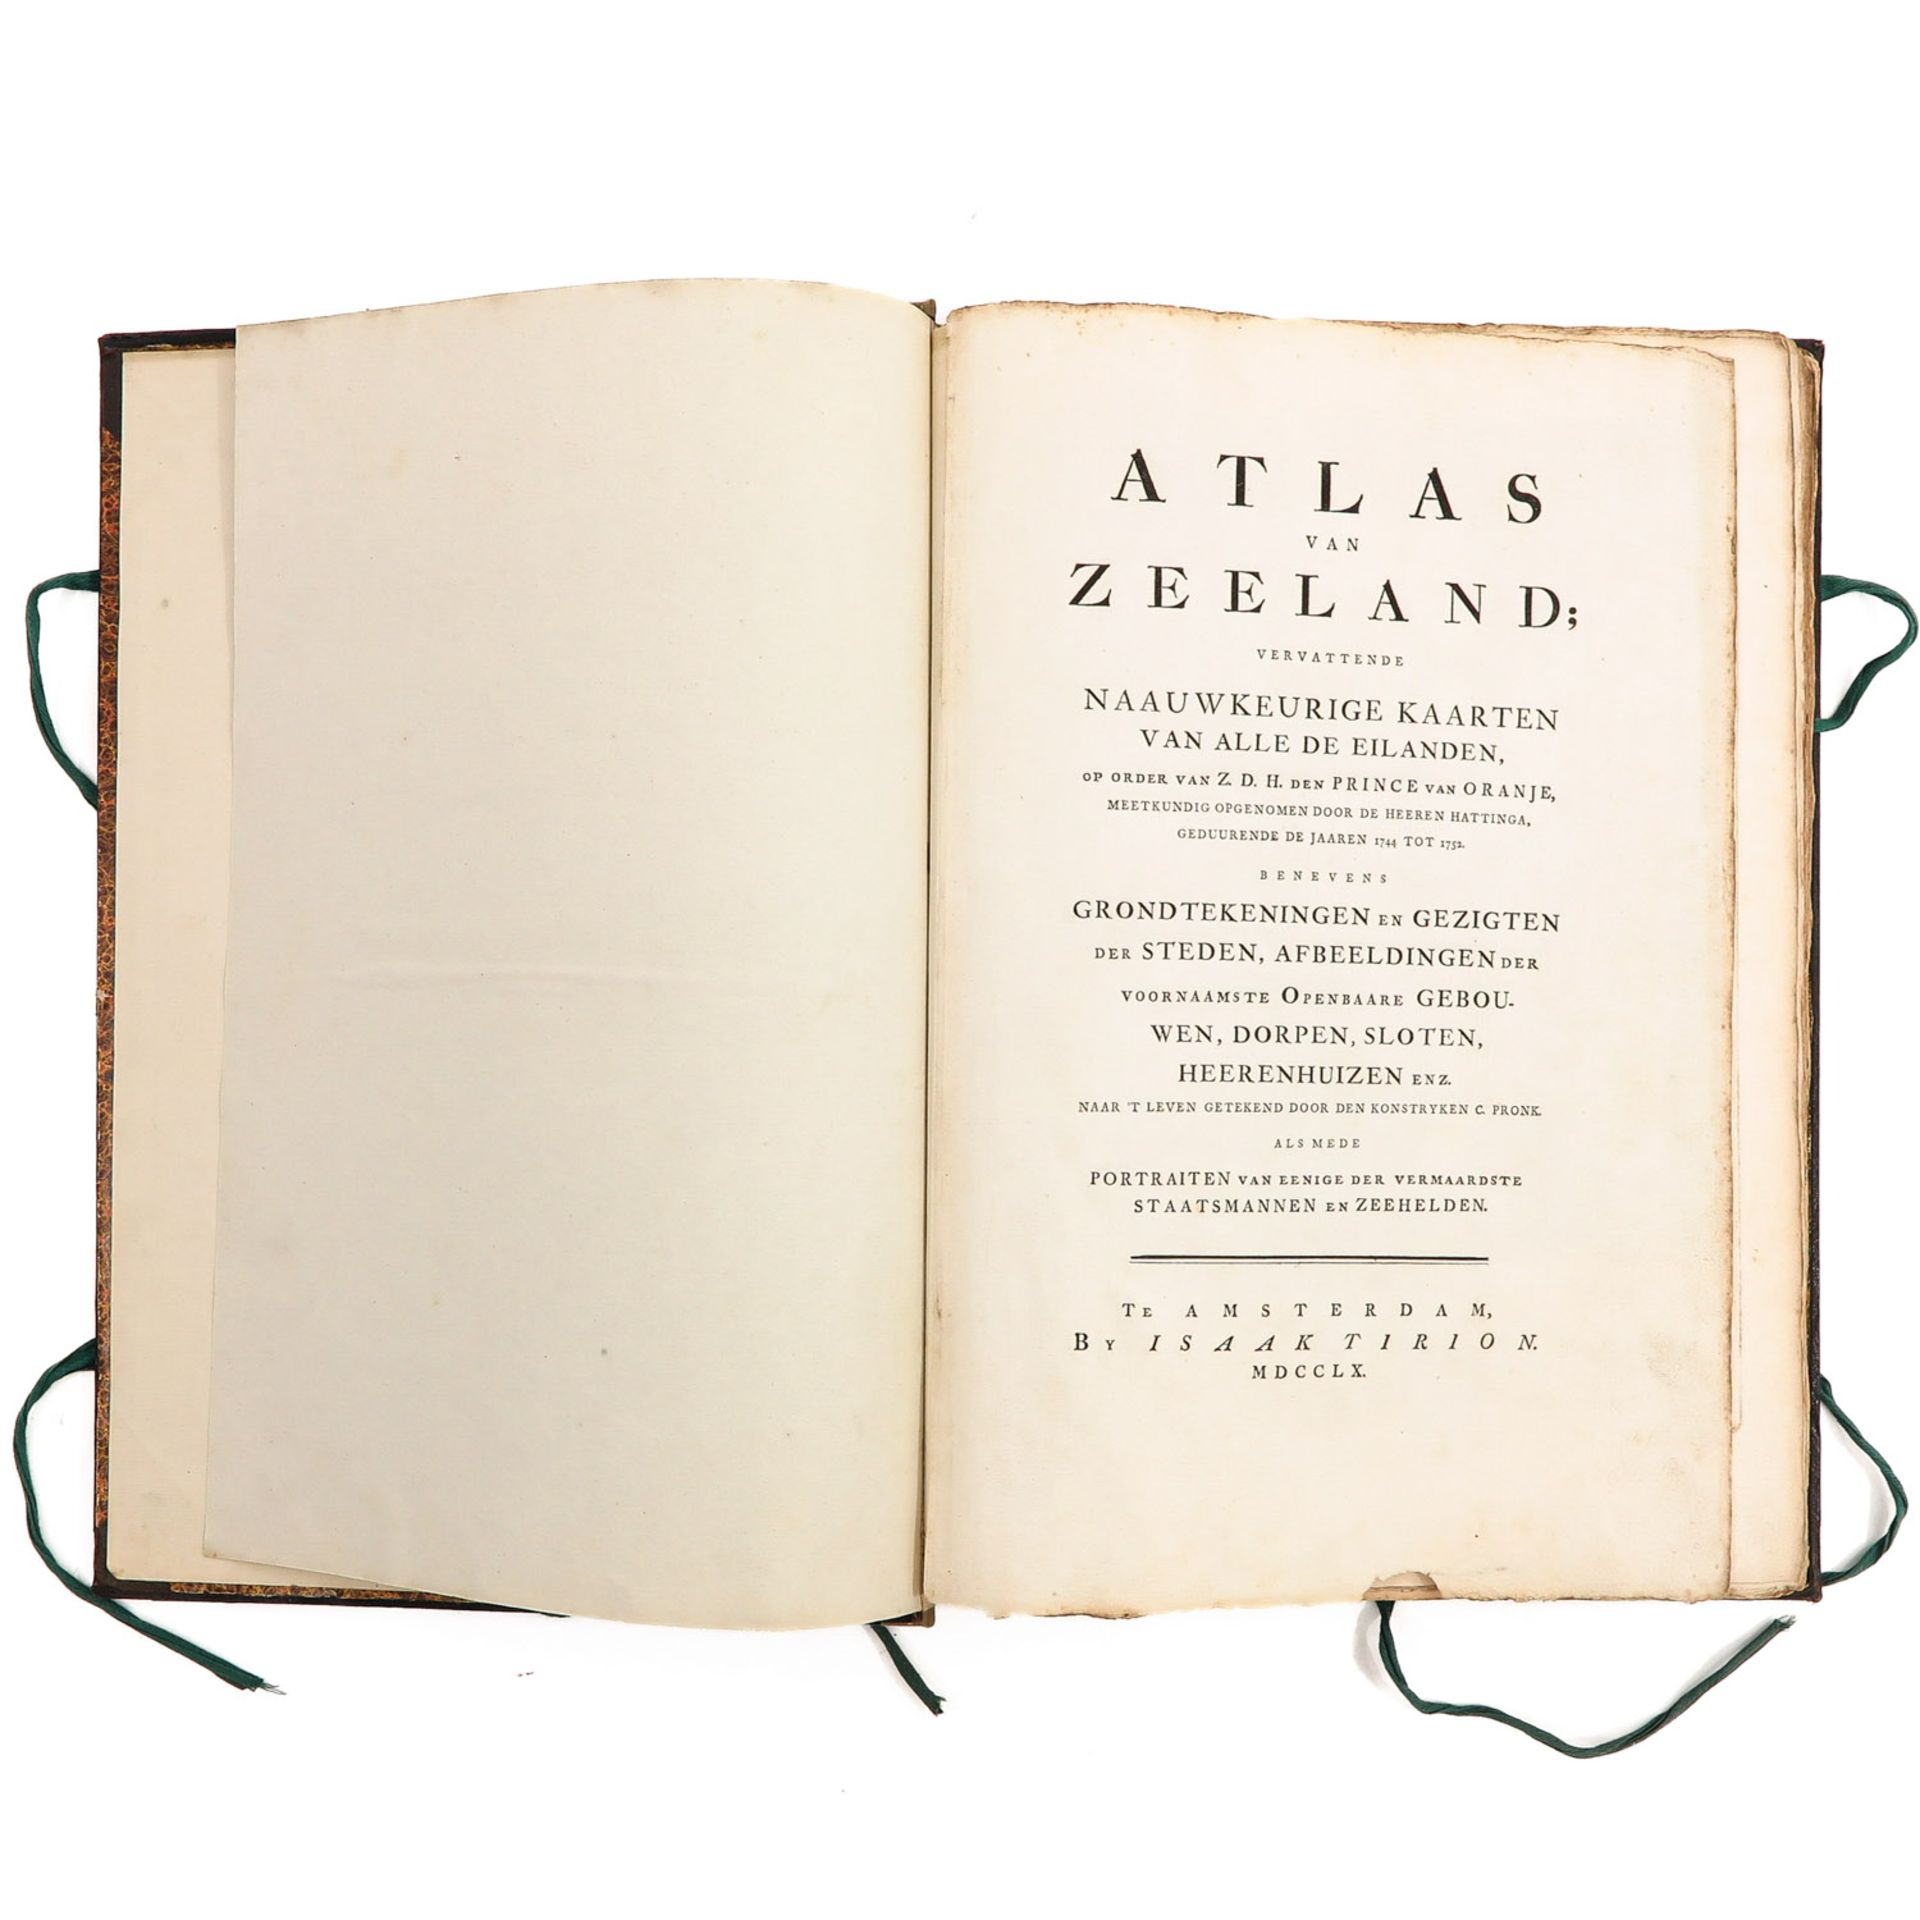 An Atlas from Zeeland